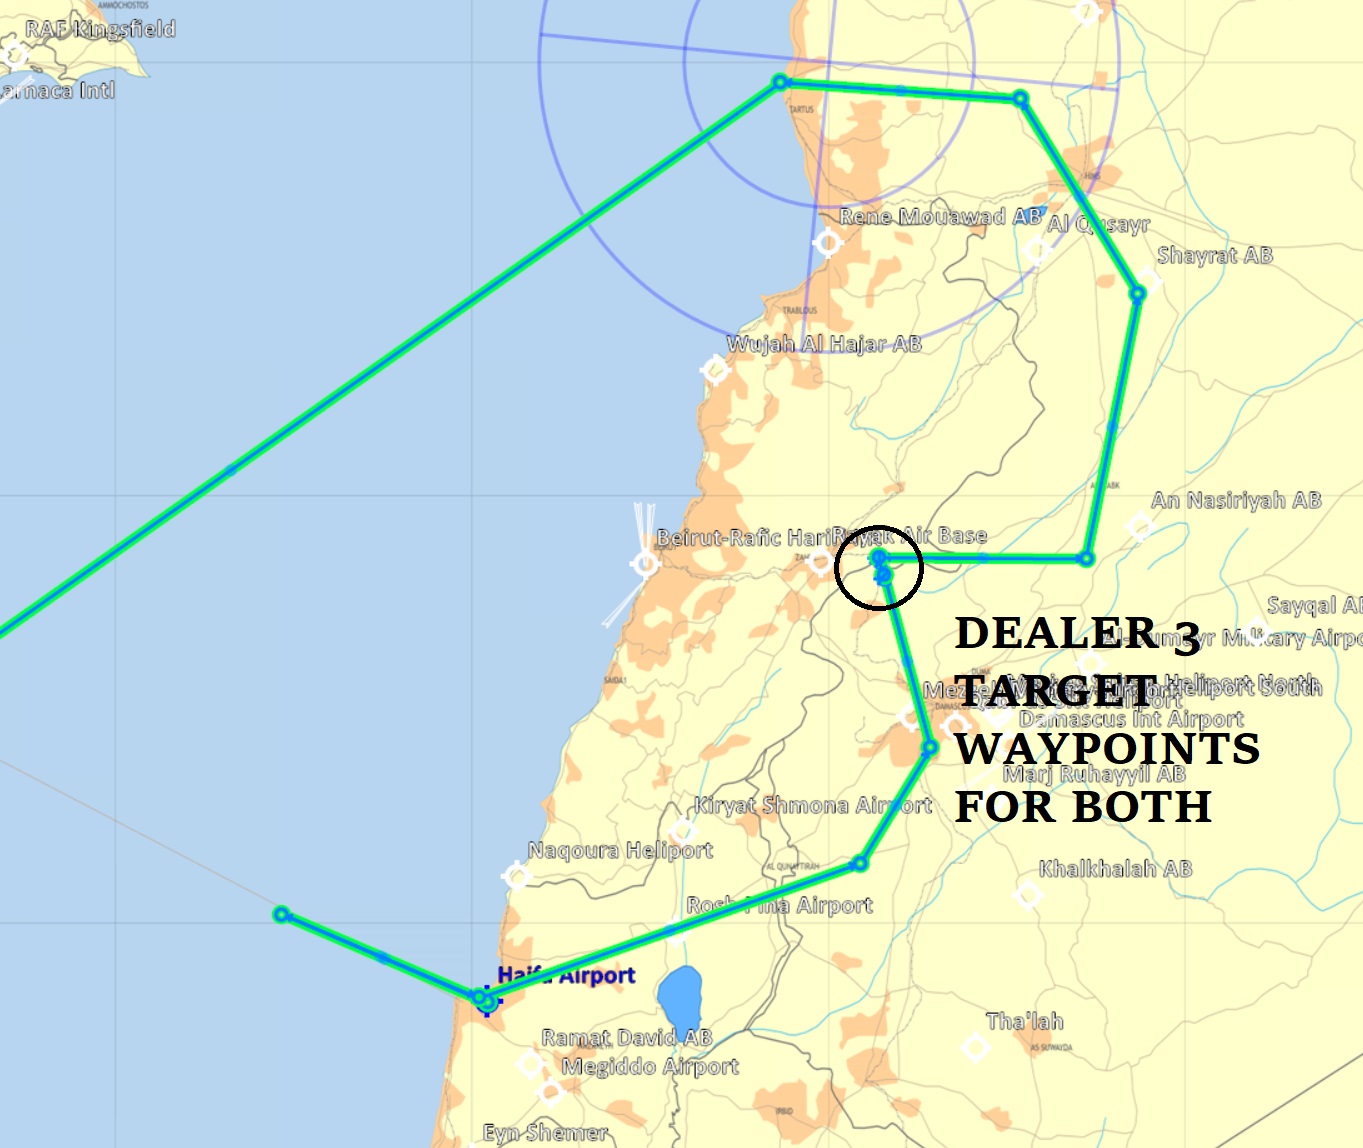 week14 dealer 3 target route map.jpg